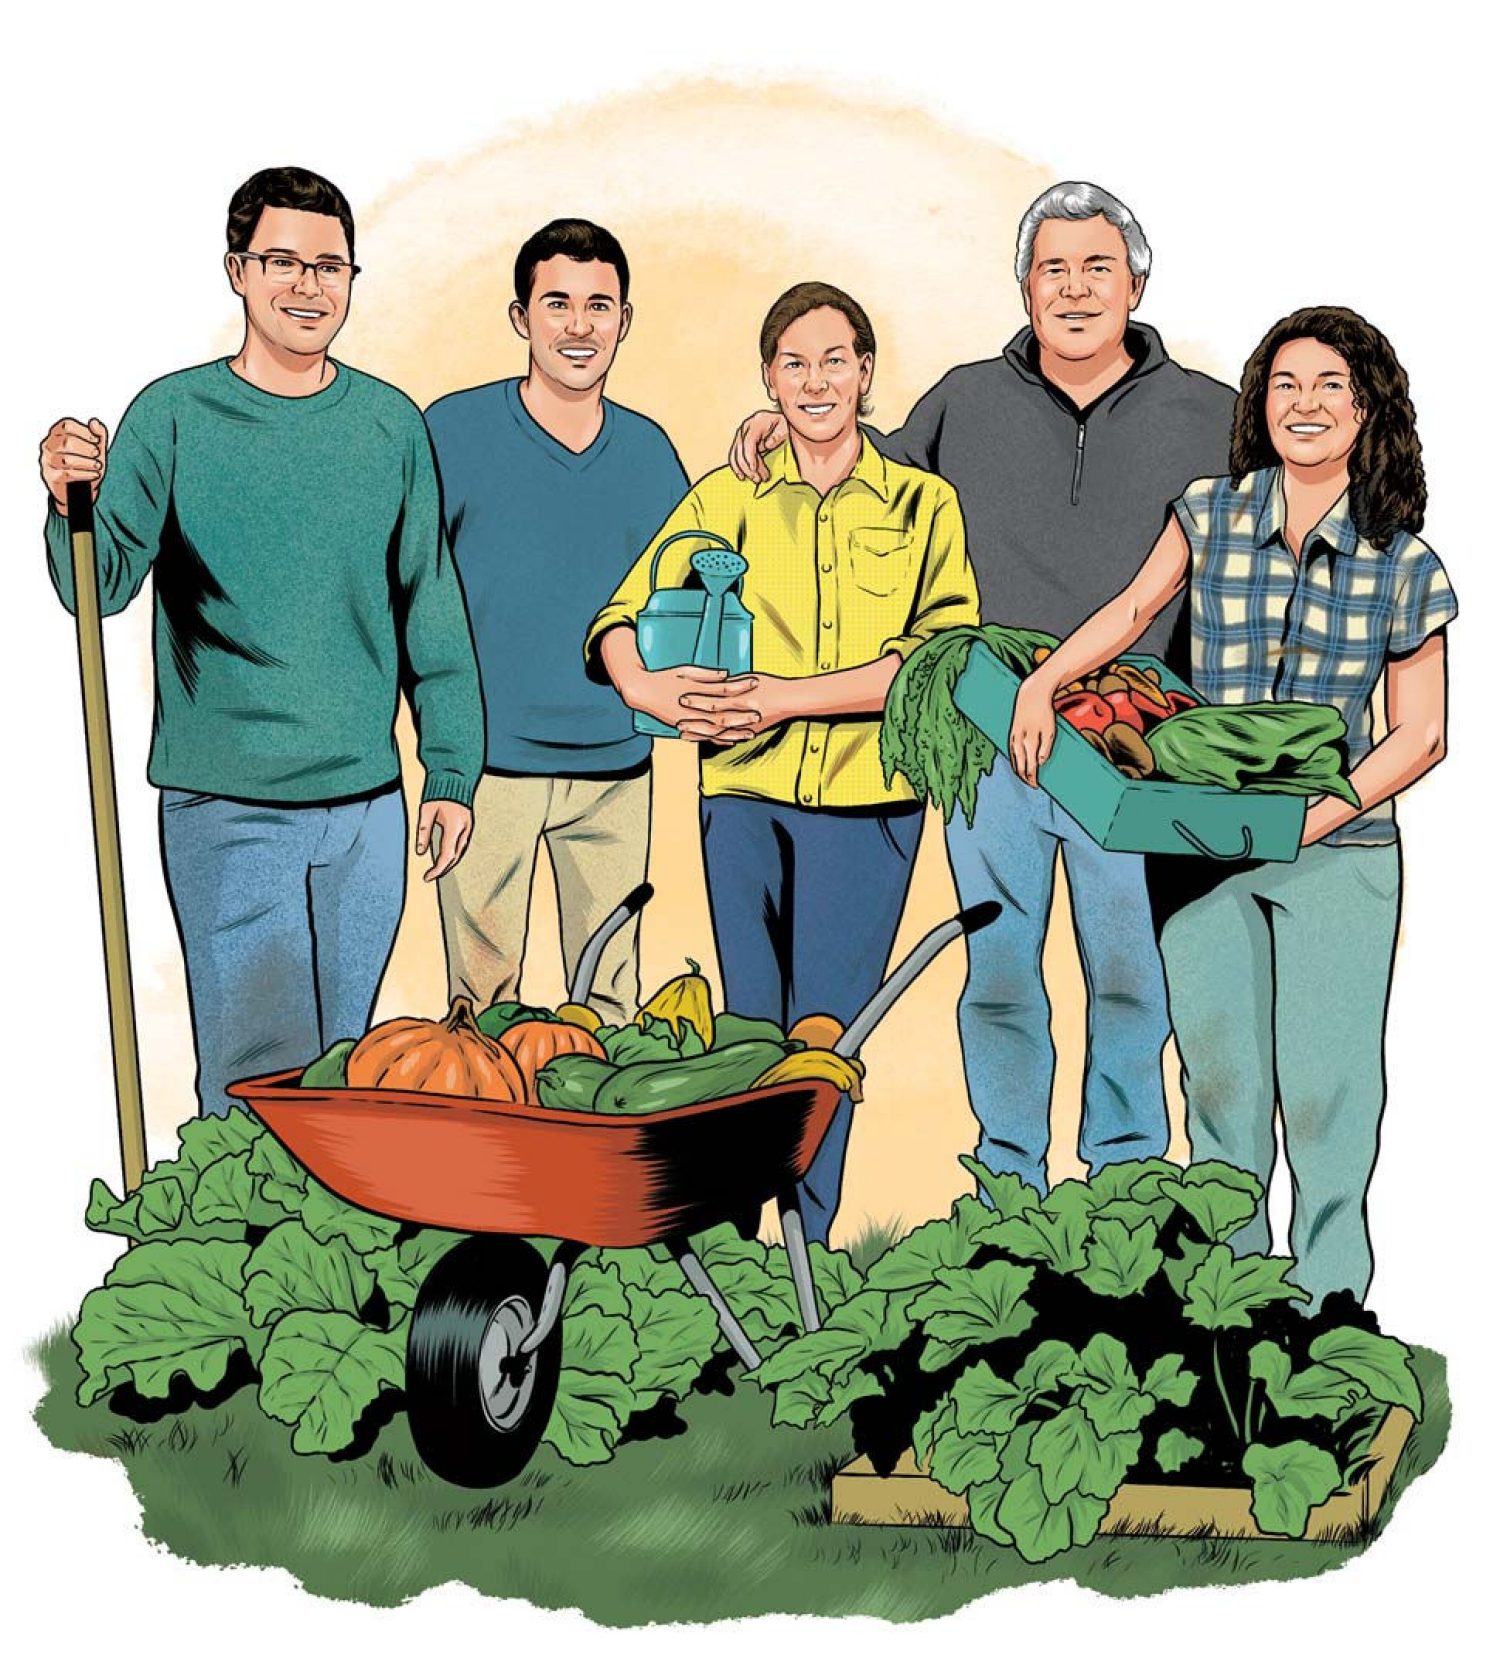 Illustration of the Rooney family in a garden scene